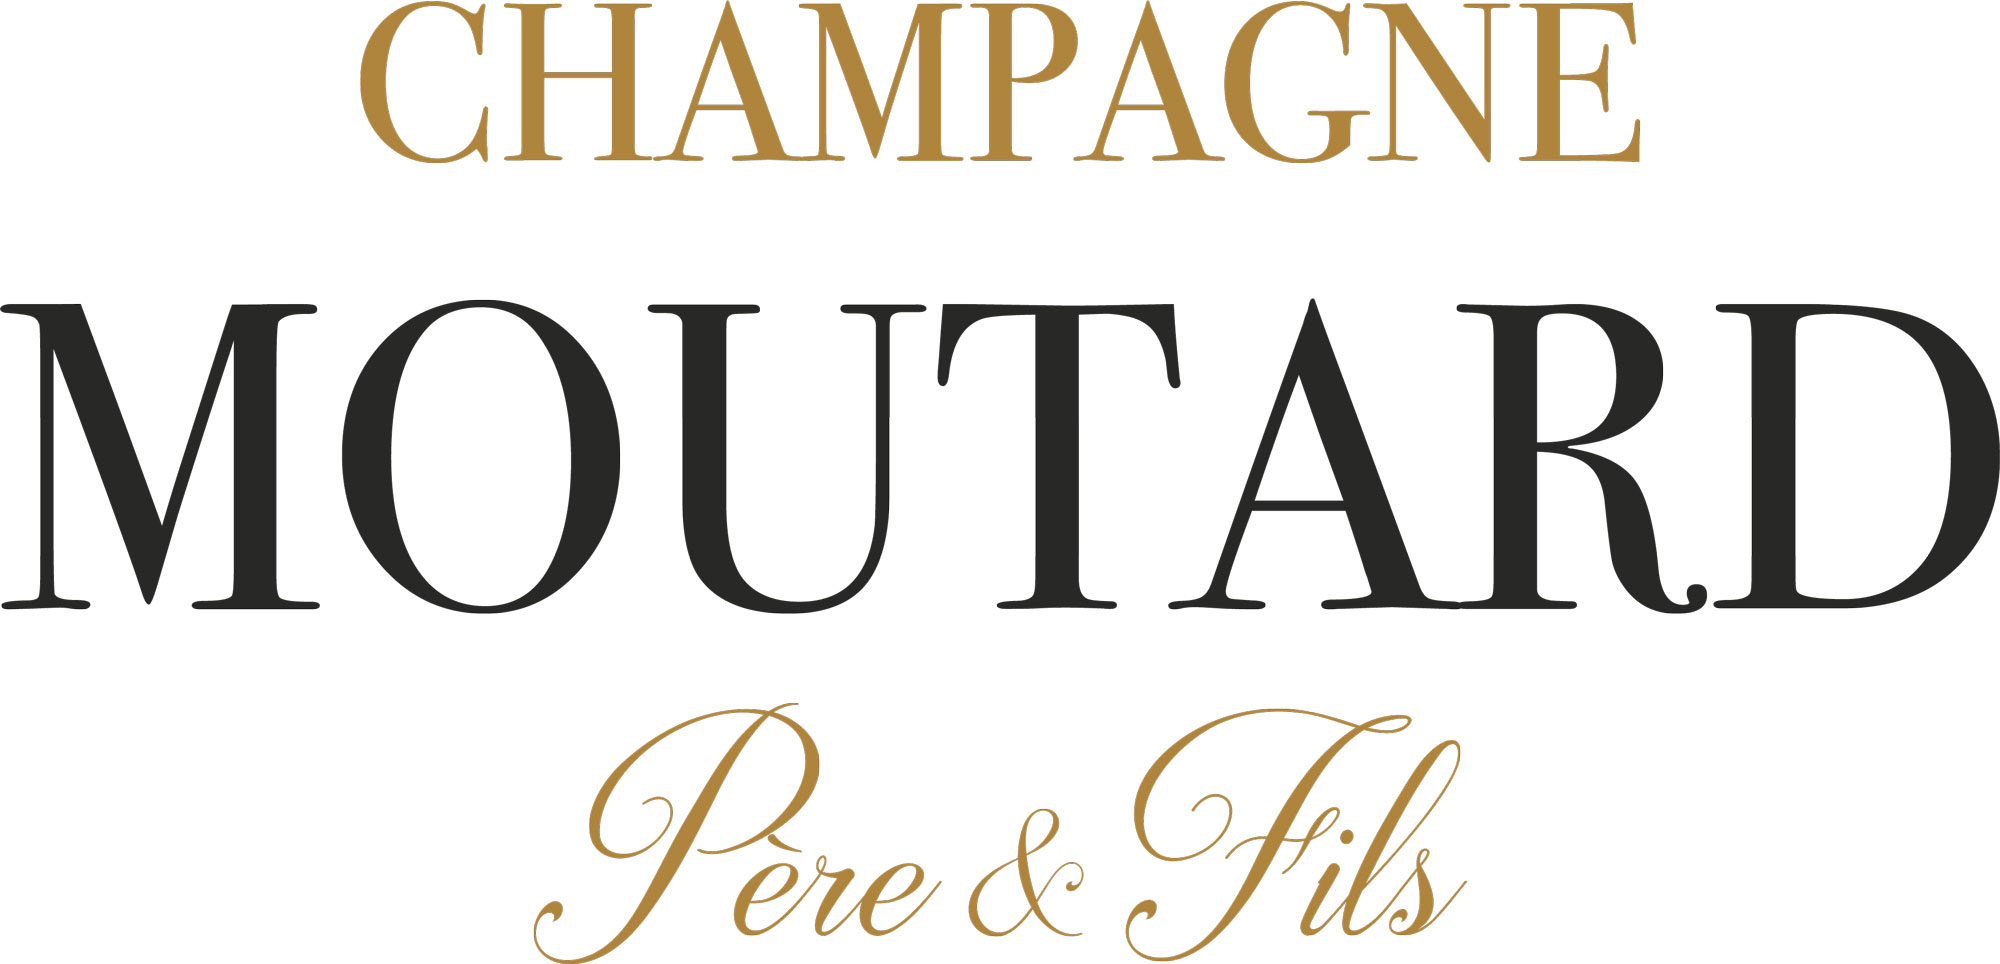 Champagne Moutard Père & Fils